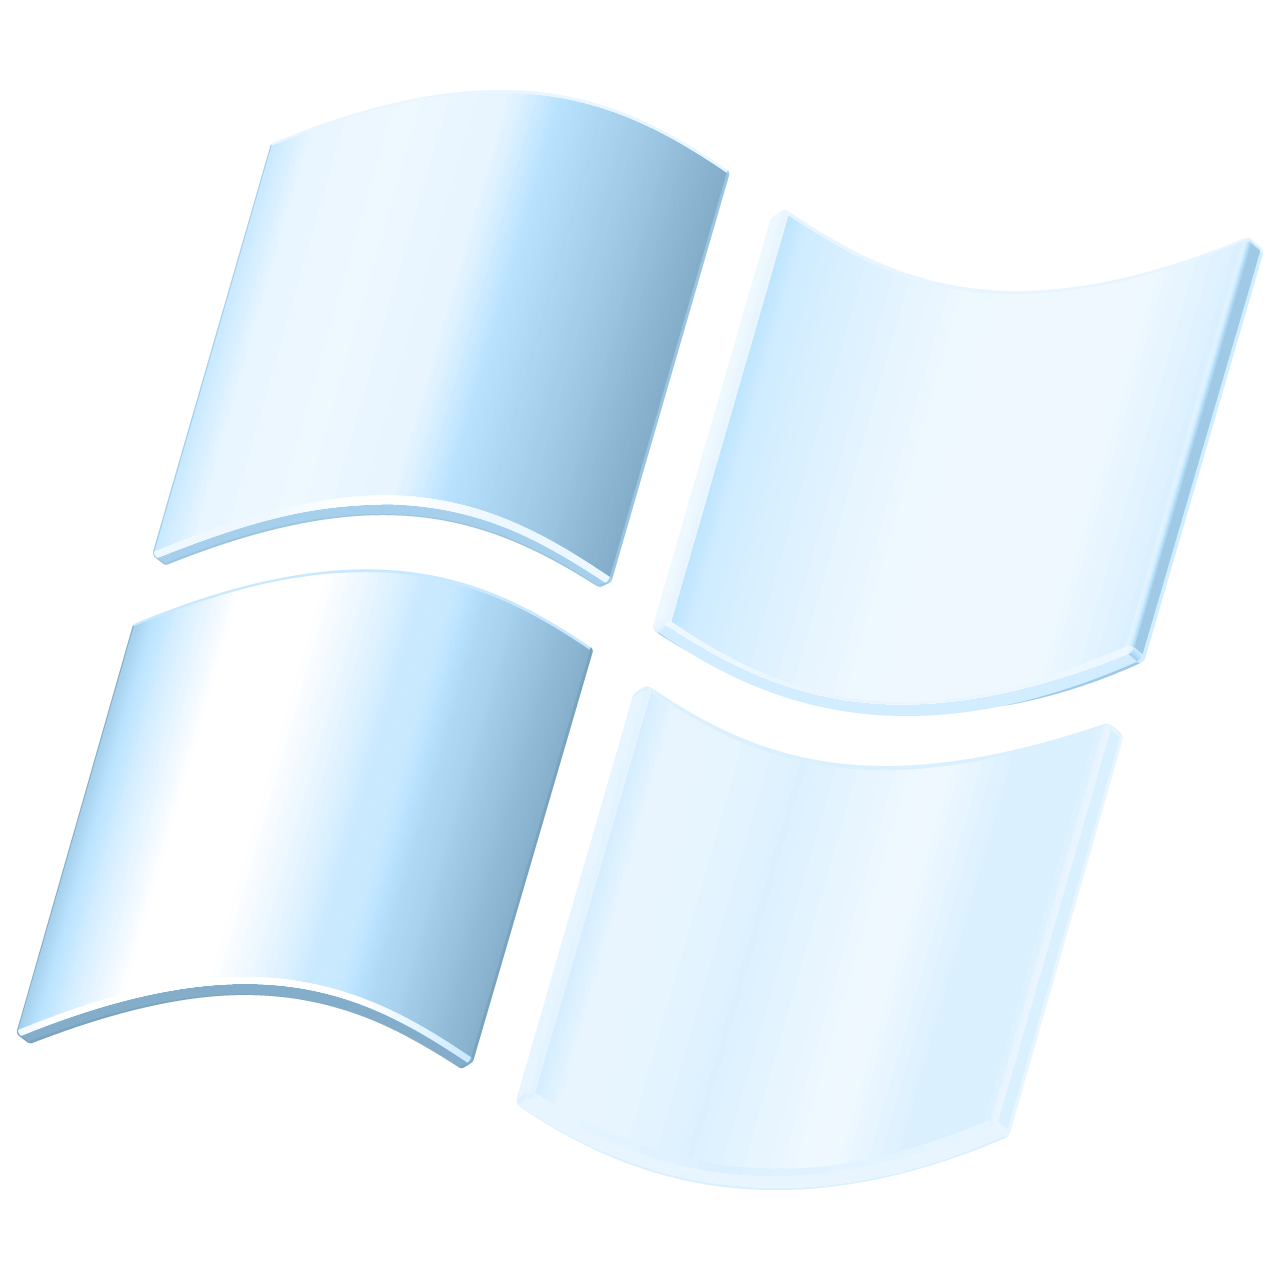 Windows Longhorn Logo By Mohamadouwindowsxp10 On Deviantart